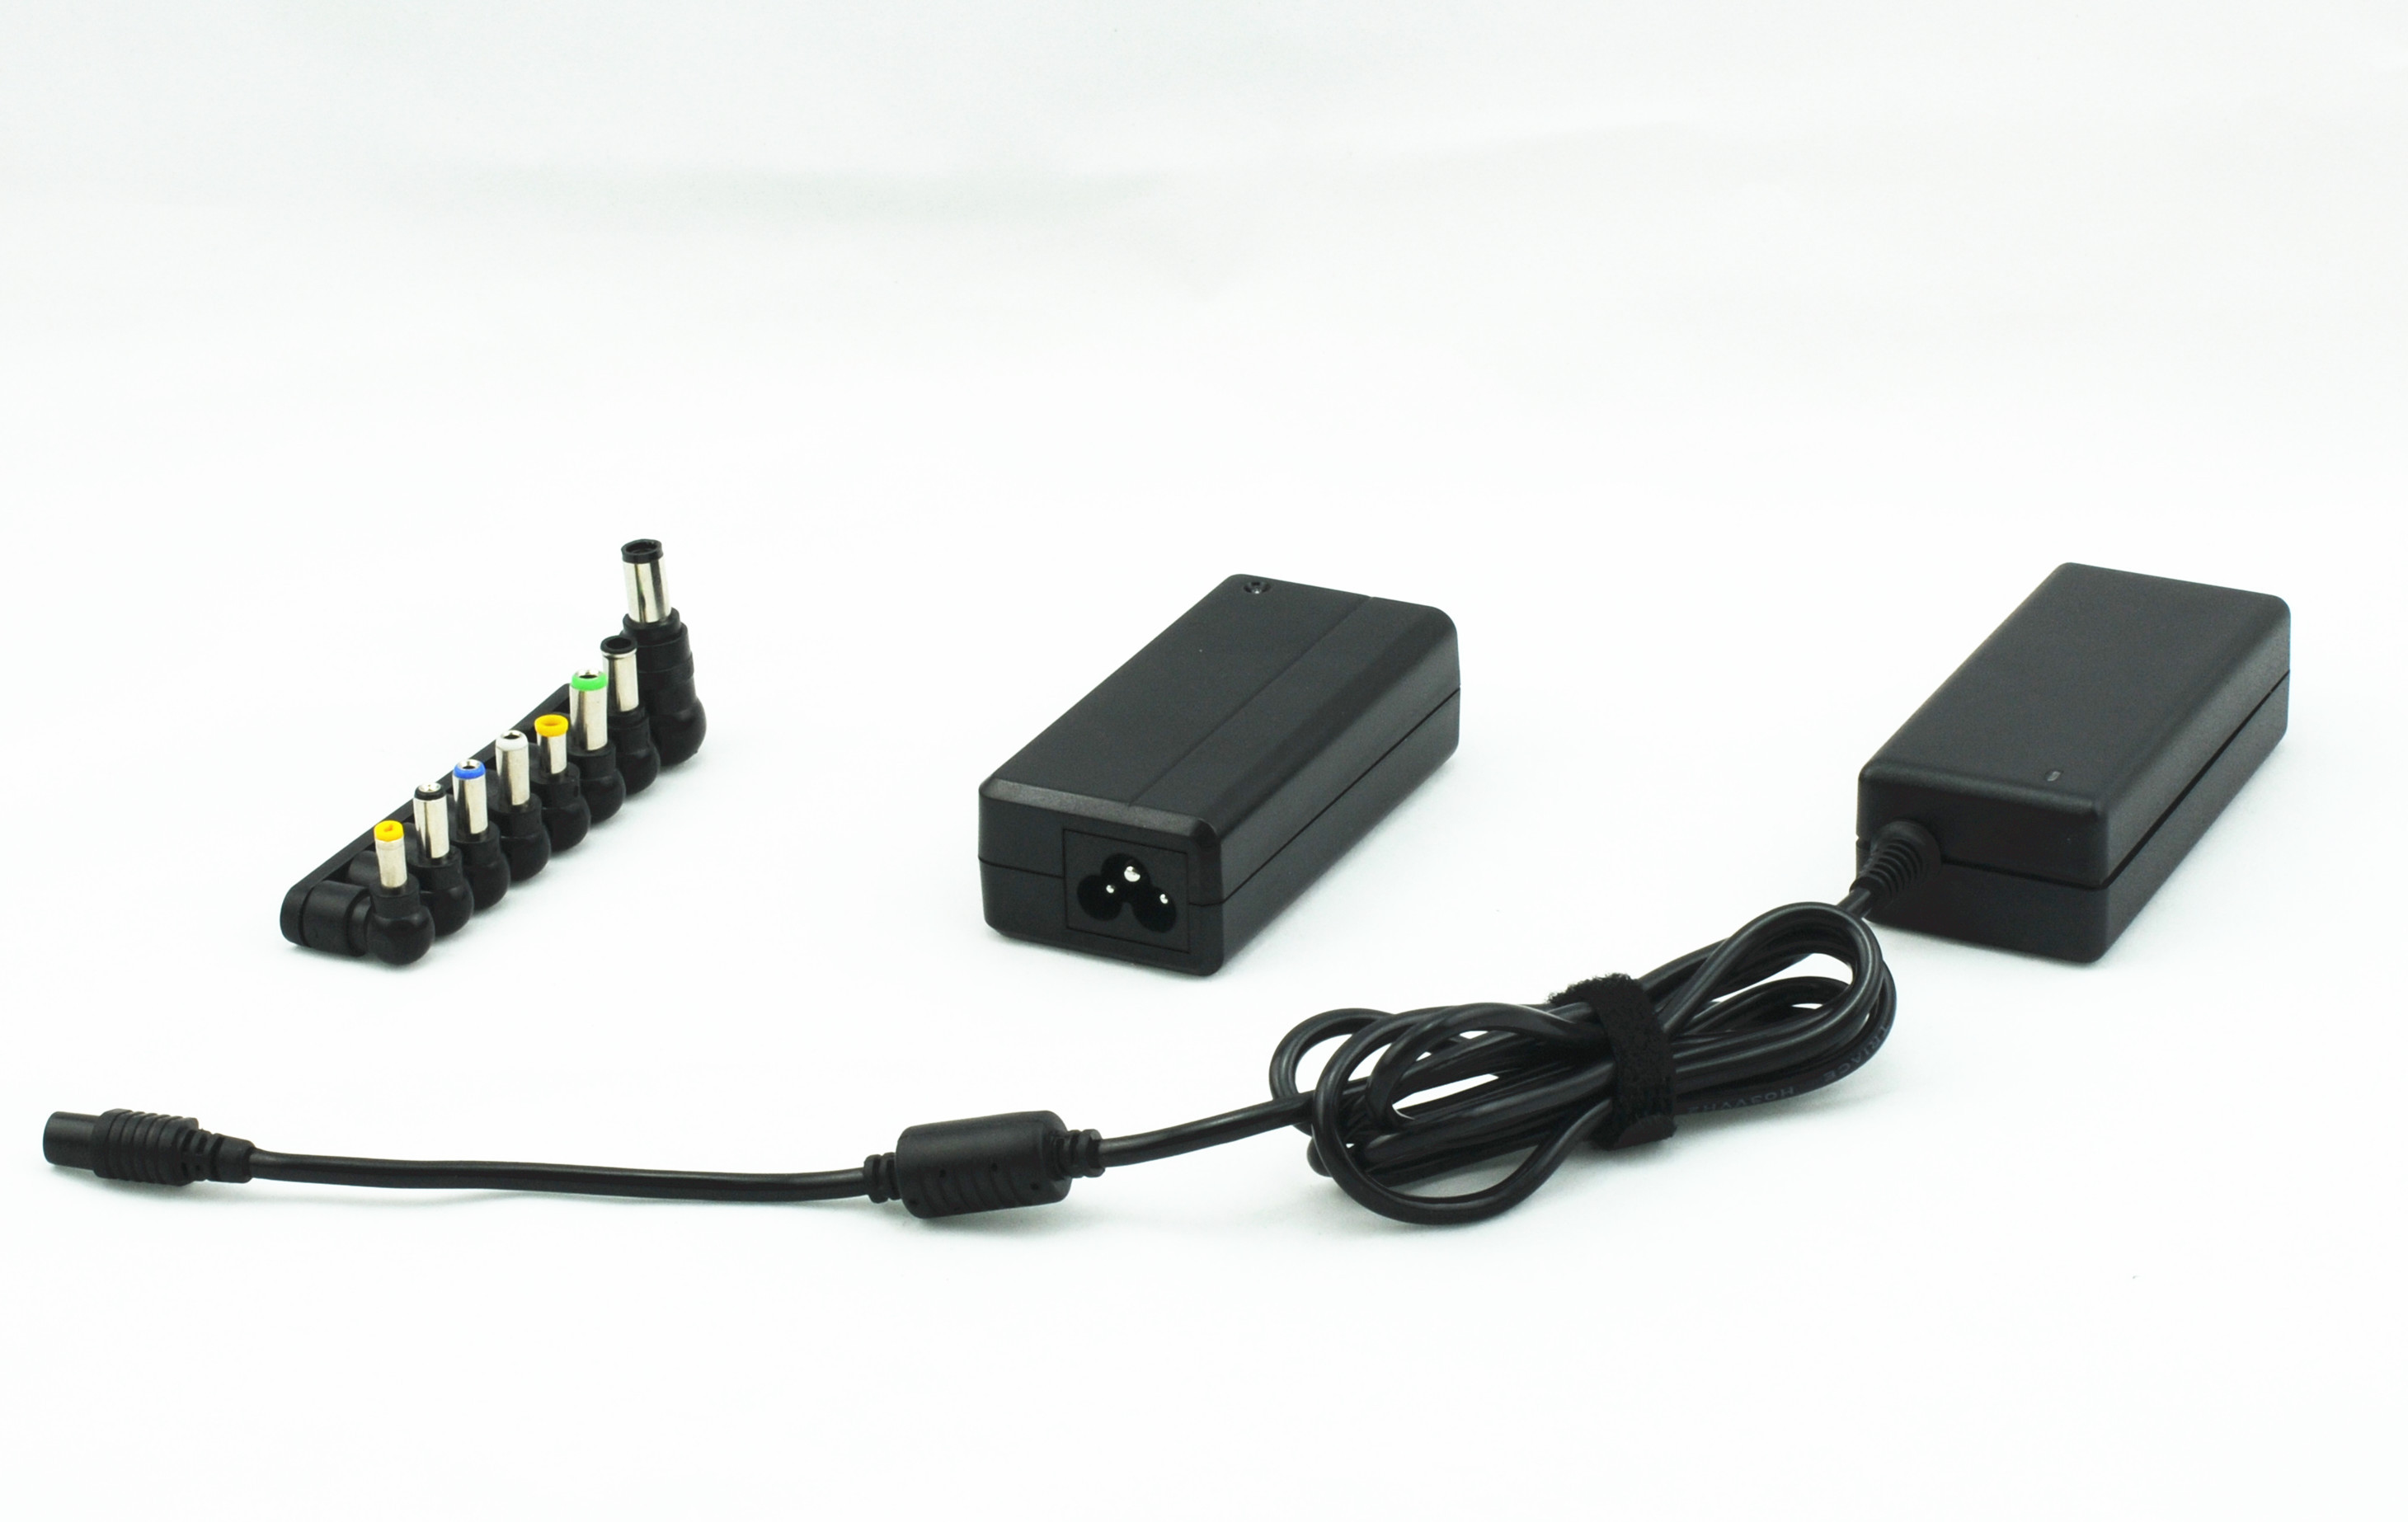 24 - 30W Wyjście Uniwersalne DC Power Adapter z C6 / C8 Socket